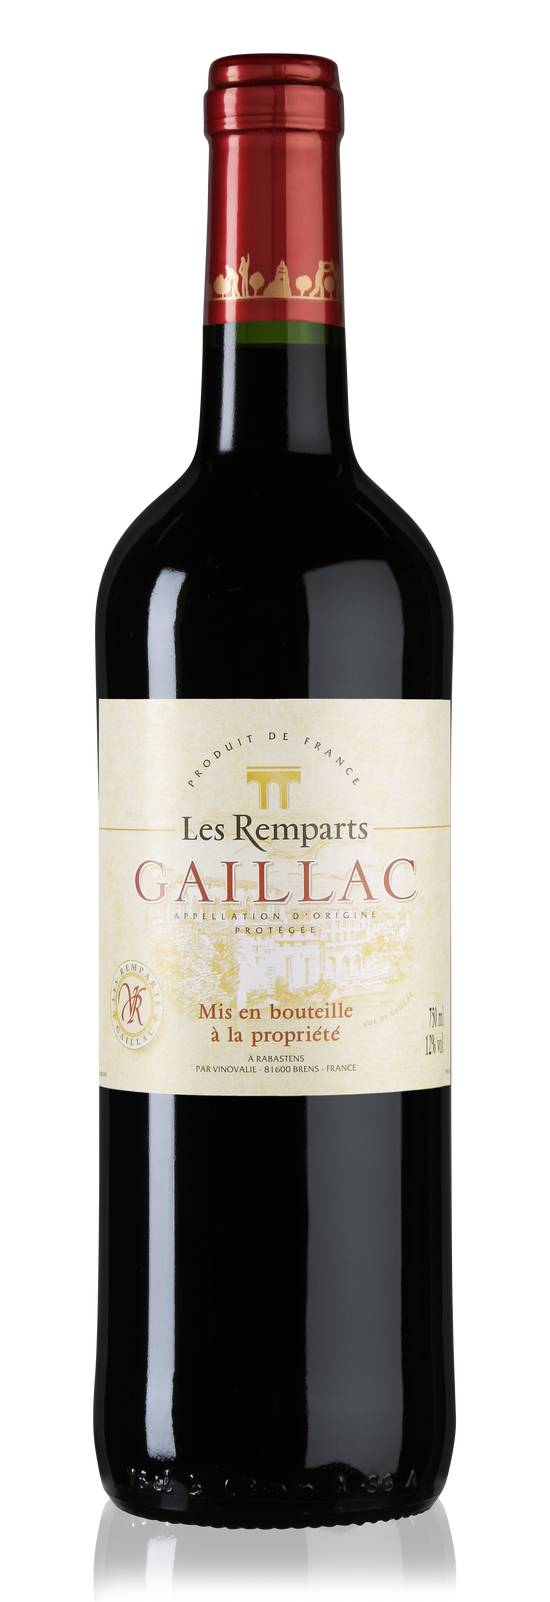 Les Remparts - Vin rouge sud-ouest AOP gaillac (750 ml)